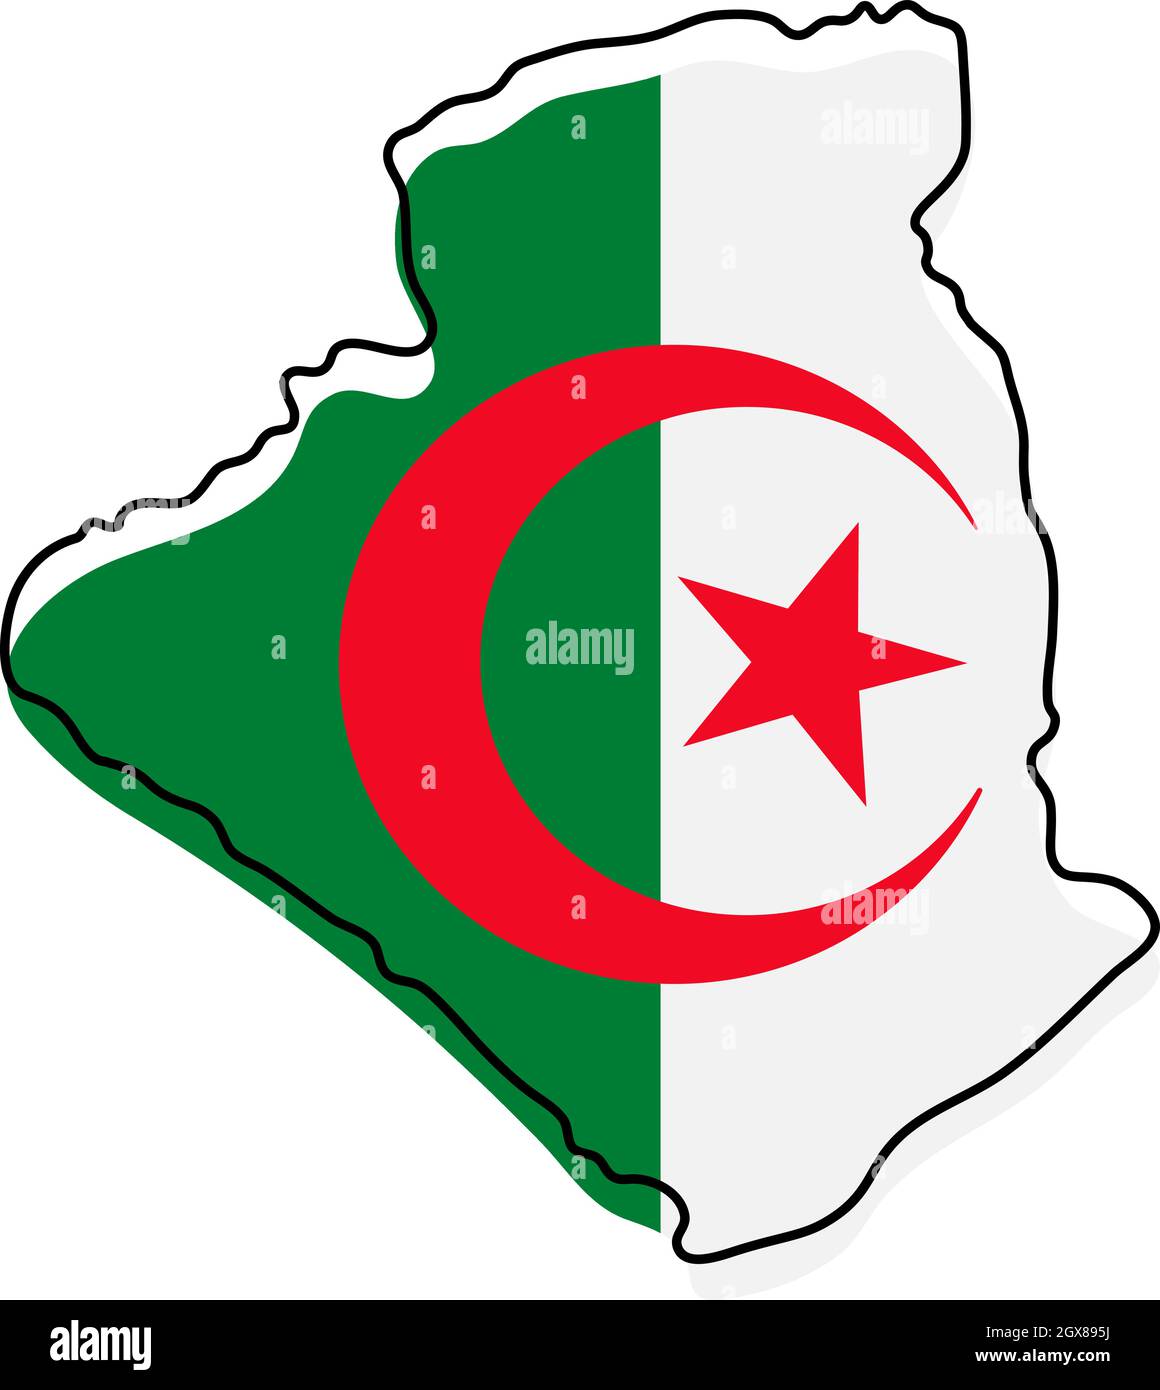 Country Shape Illustration Algeria Algeria Stock Vector (Royalty Free)  1248067315